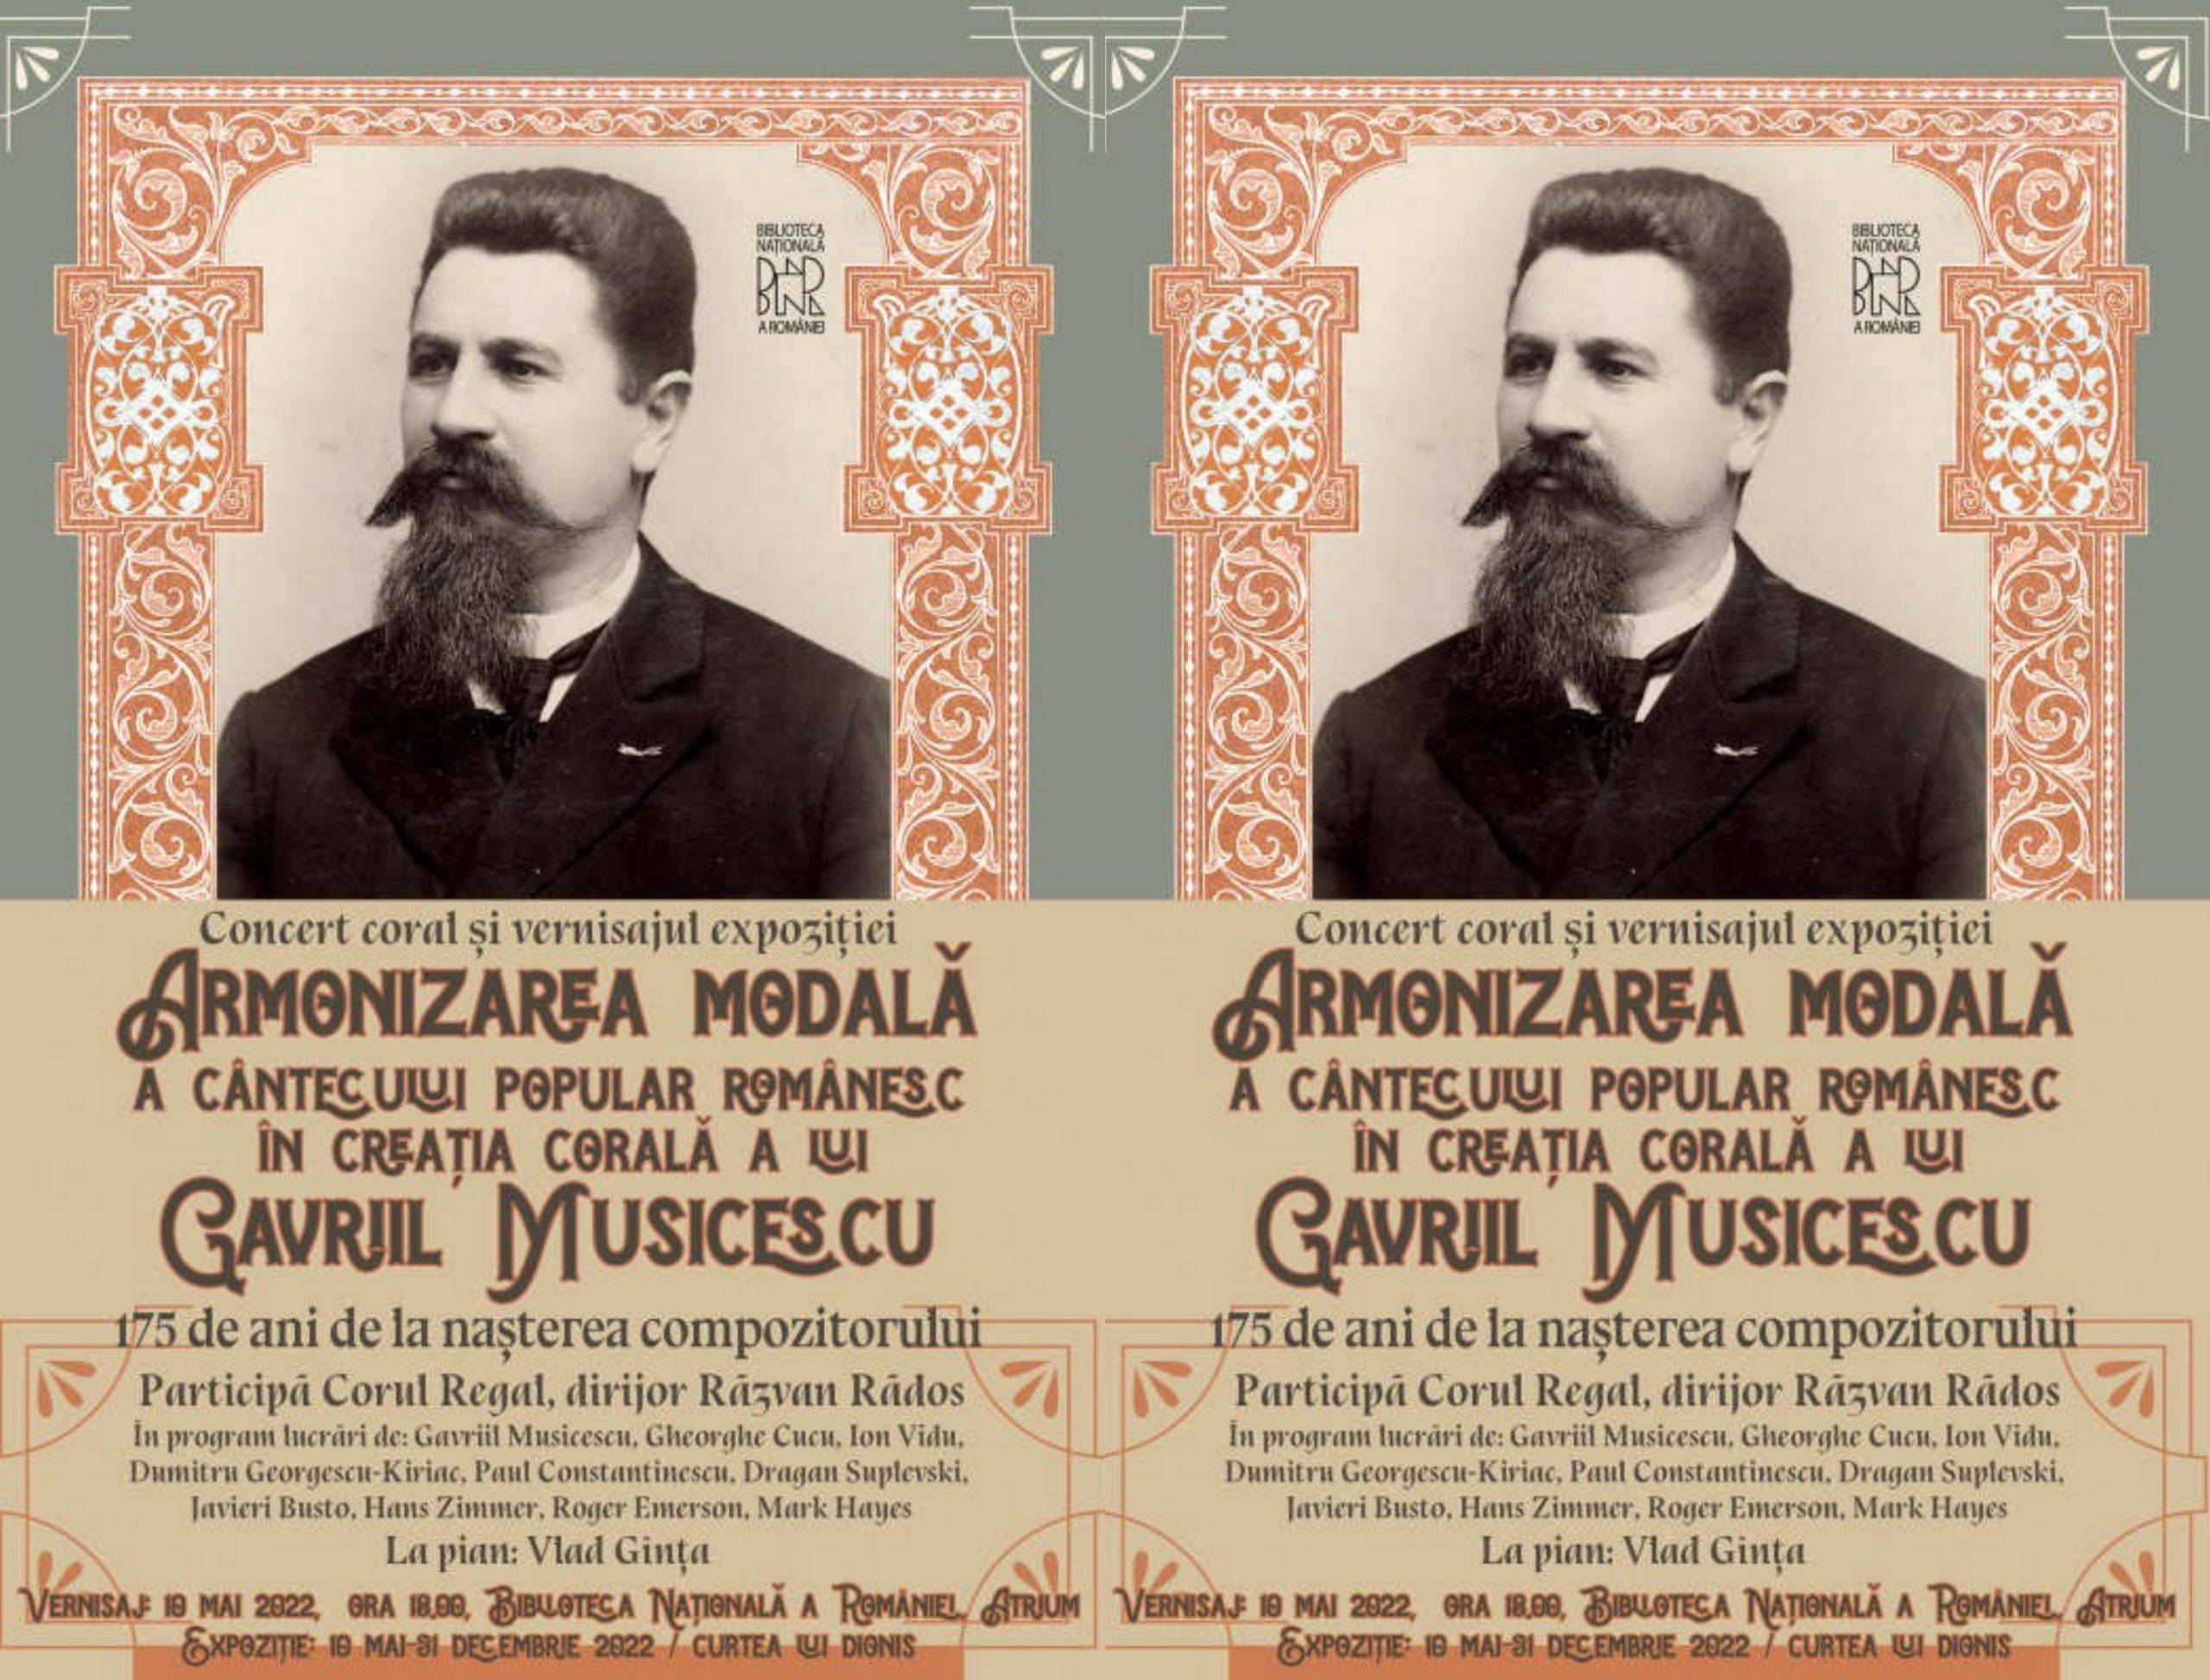 Gavriil Musicescu, comemorat spectaculos de Biblioteca Națională a României